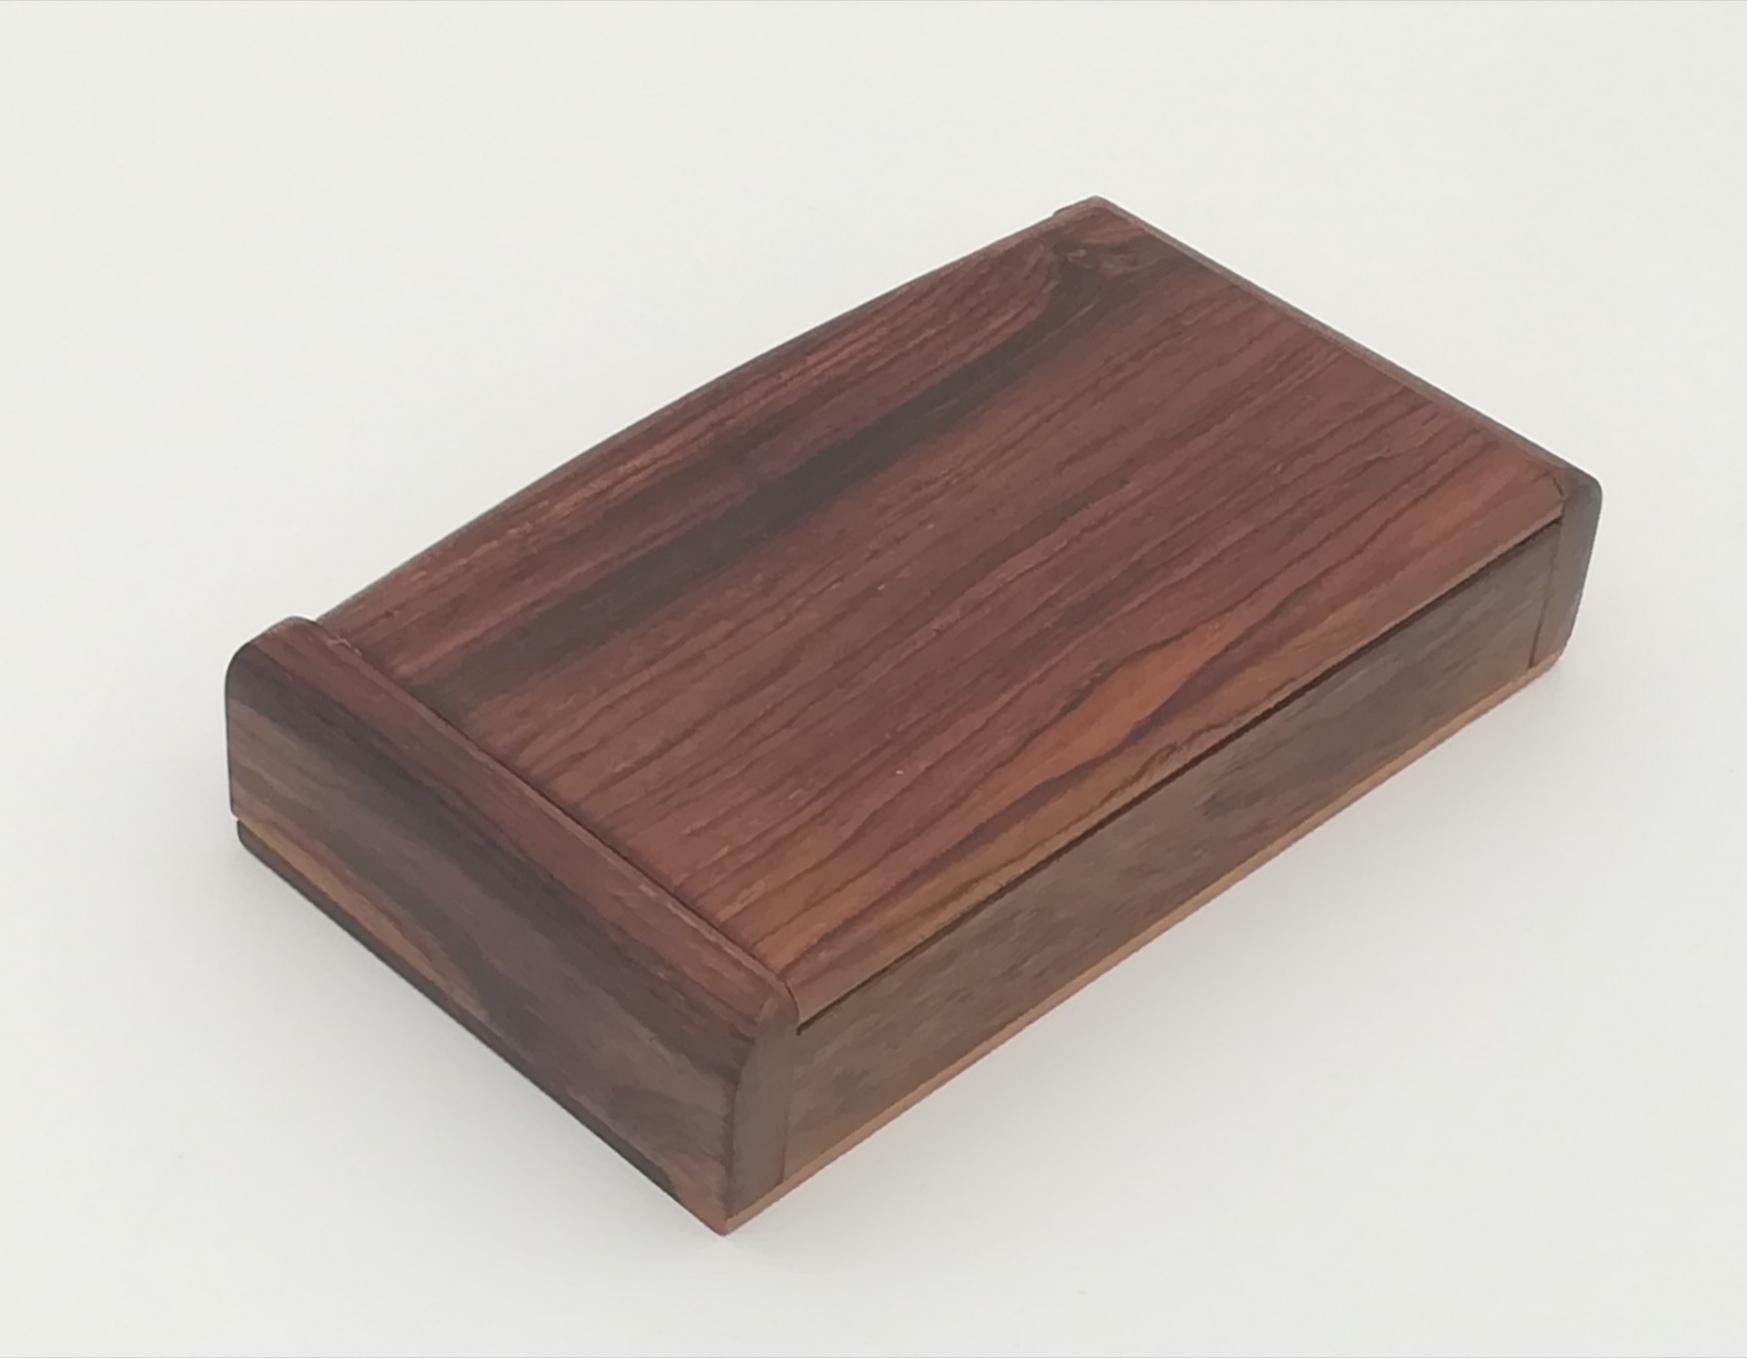 Diese schöne und schwere Zigarrenkiste, die vom renommierten österreichischen Designer Carl Auböck entworfen wurde, wirkt auf dem Tisch, auf dem sie steht, elegant und edel. Die Qualität des Objekts zeigt sehr schöne Details im Holz und einen feinen